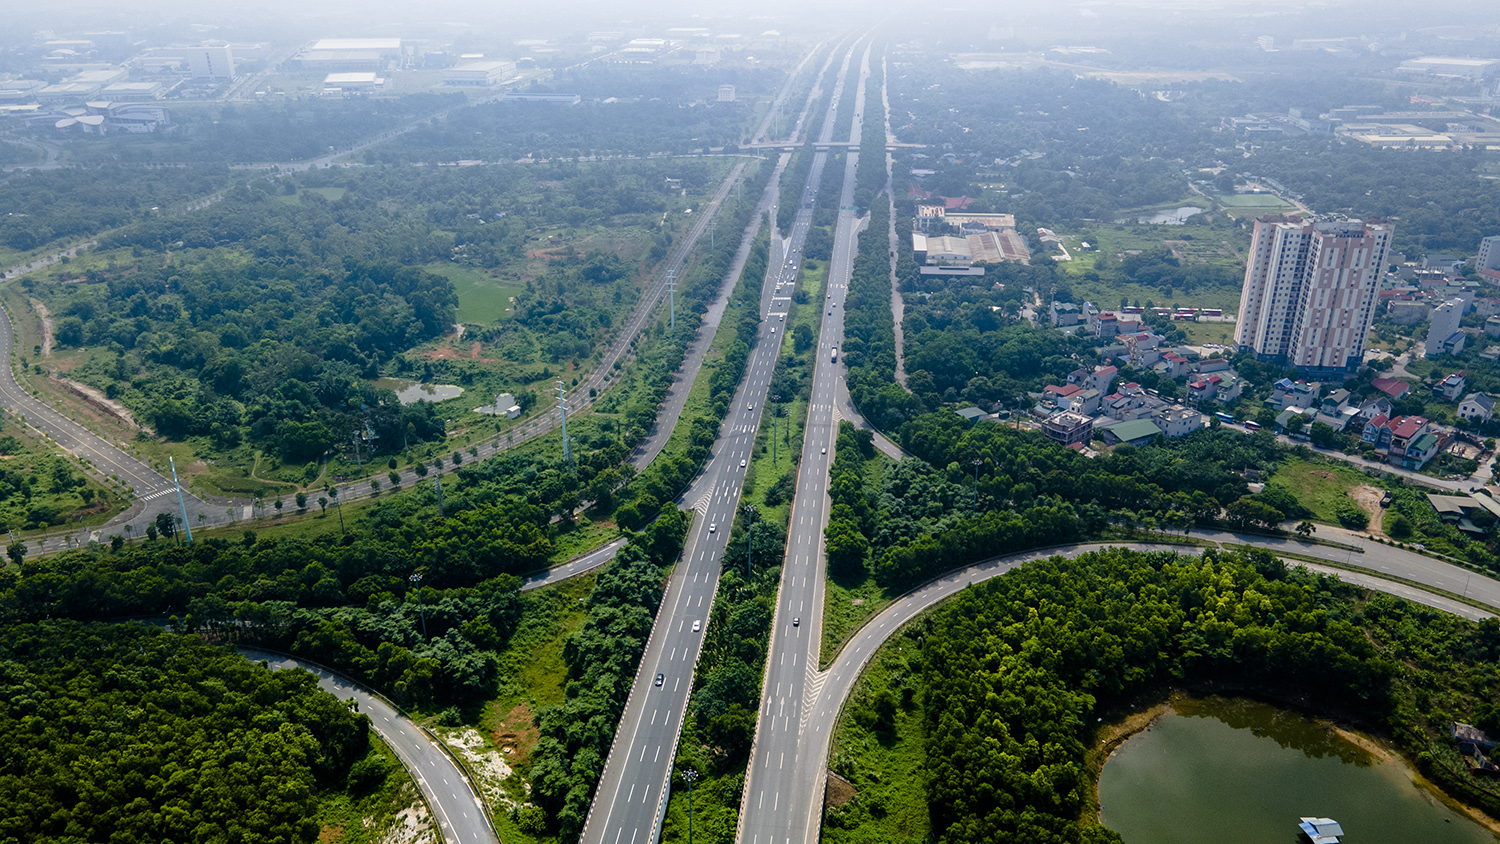 Đại lộ Thăng Long nằm trong dự án đường Láng - Hòa Lạc, có tổng mức đầu tư 7.527 tỷ đồng. Đây là tuyến đường cao tốc hiện đại, có tổng chiều dài là 29,264km, được thông xe vào tháng 10/2010, đúng dịp kỷ niệm nghìn năm Thăng Long - Hà Nội.